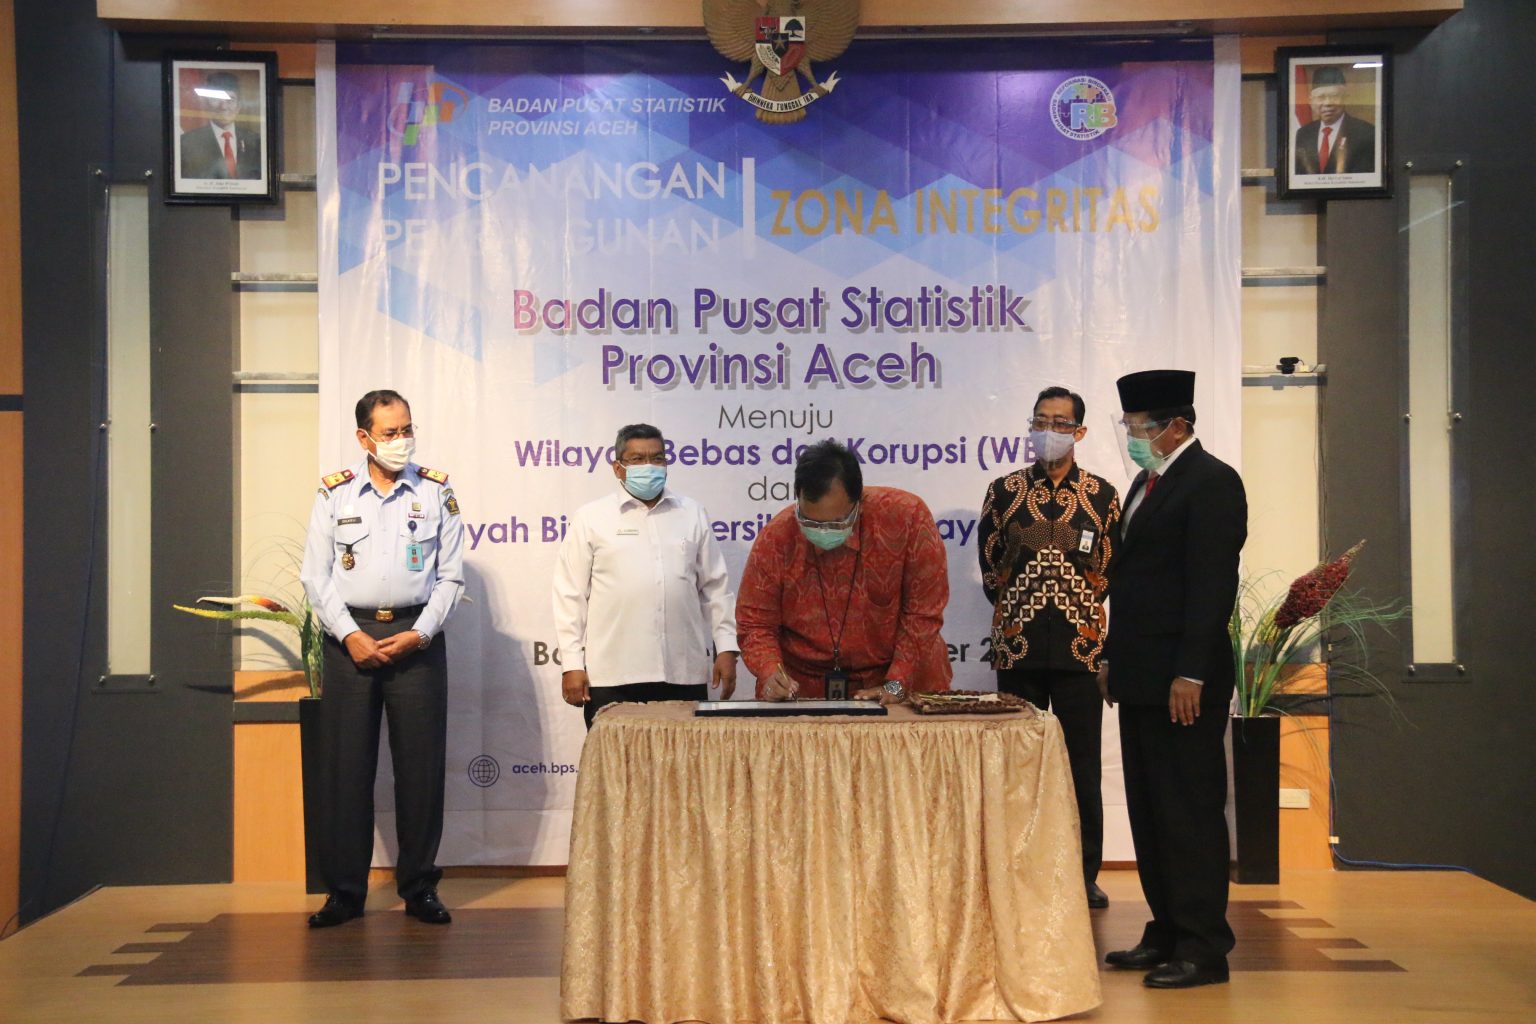 BPK Perwakilan Provinsi Aceh Menjadi Saksi Pencanangan Pembangunan Zona